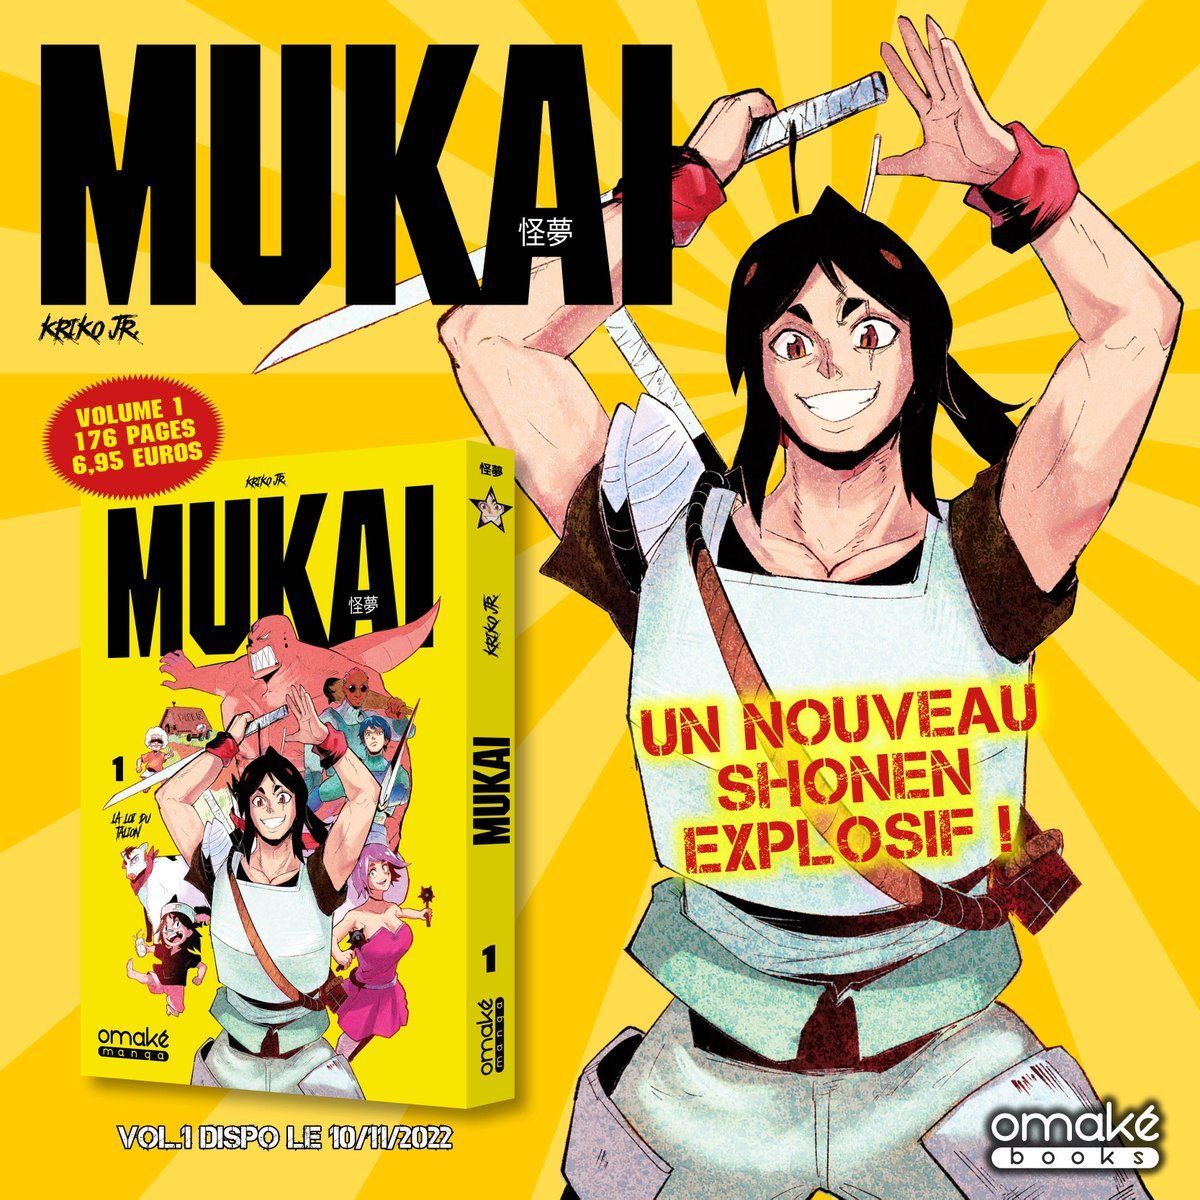 Mukai manga